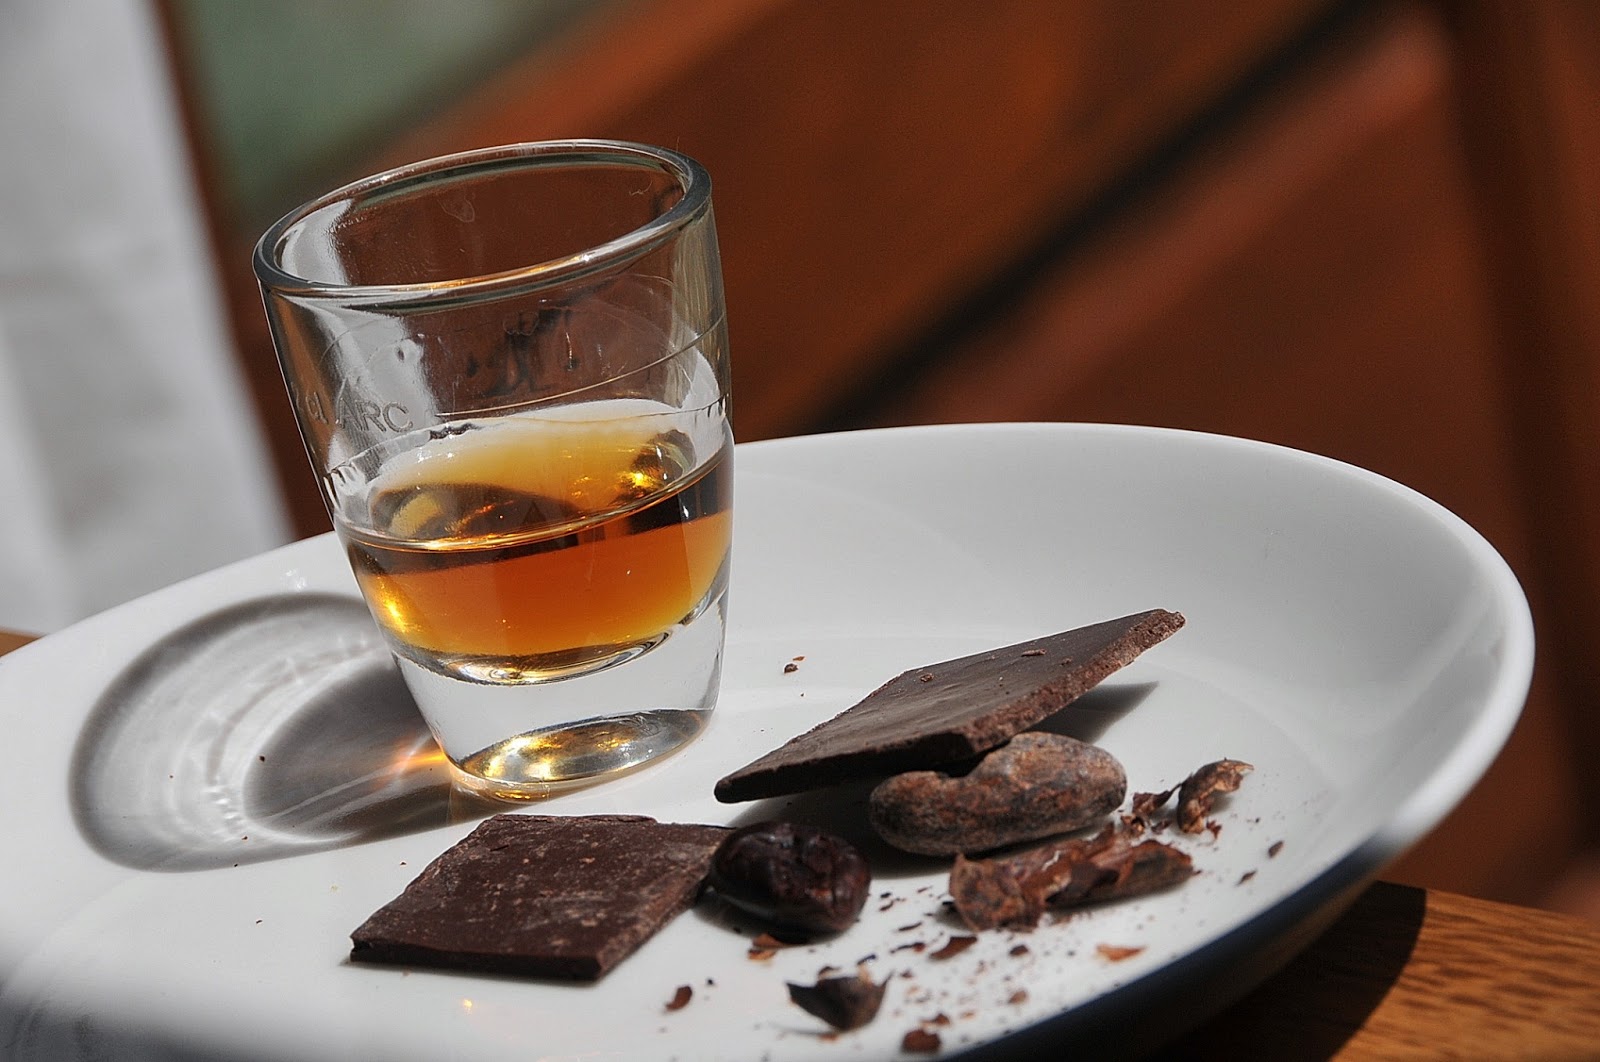 Not only chocolate: quando il cioccolato incontra il rum e vino passito